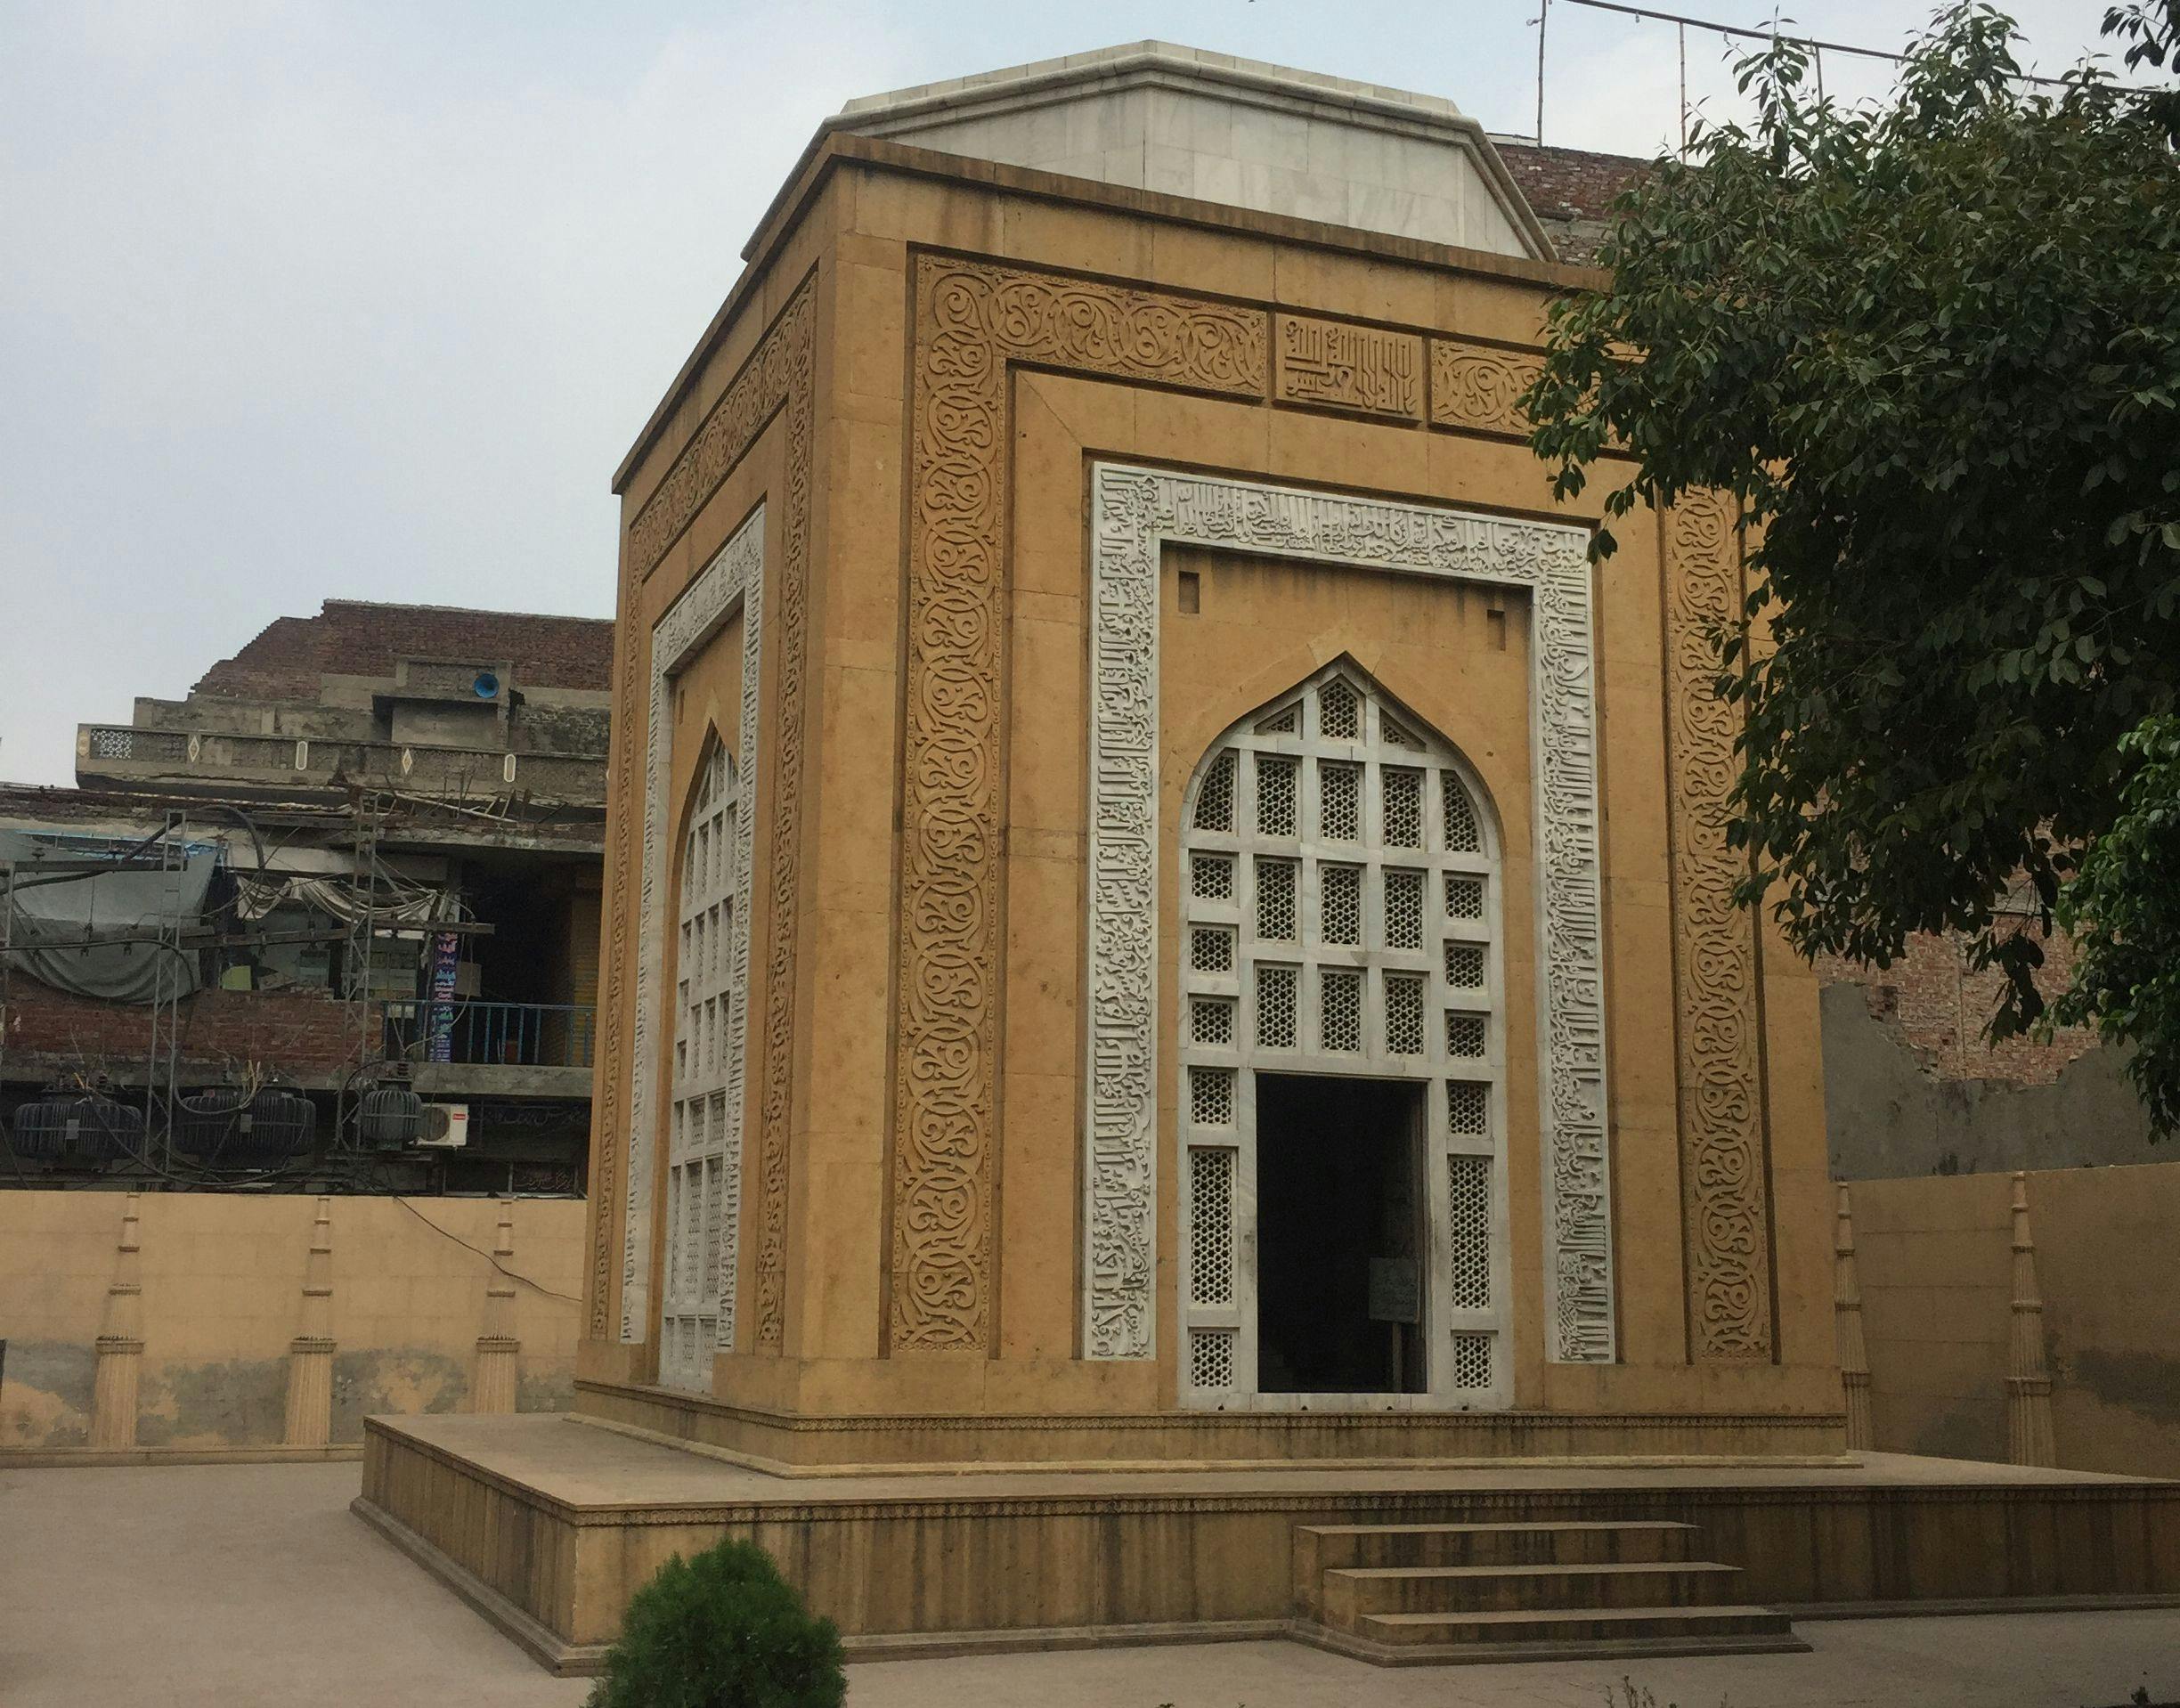 The mausoleum of Qutb-aldin Aibak